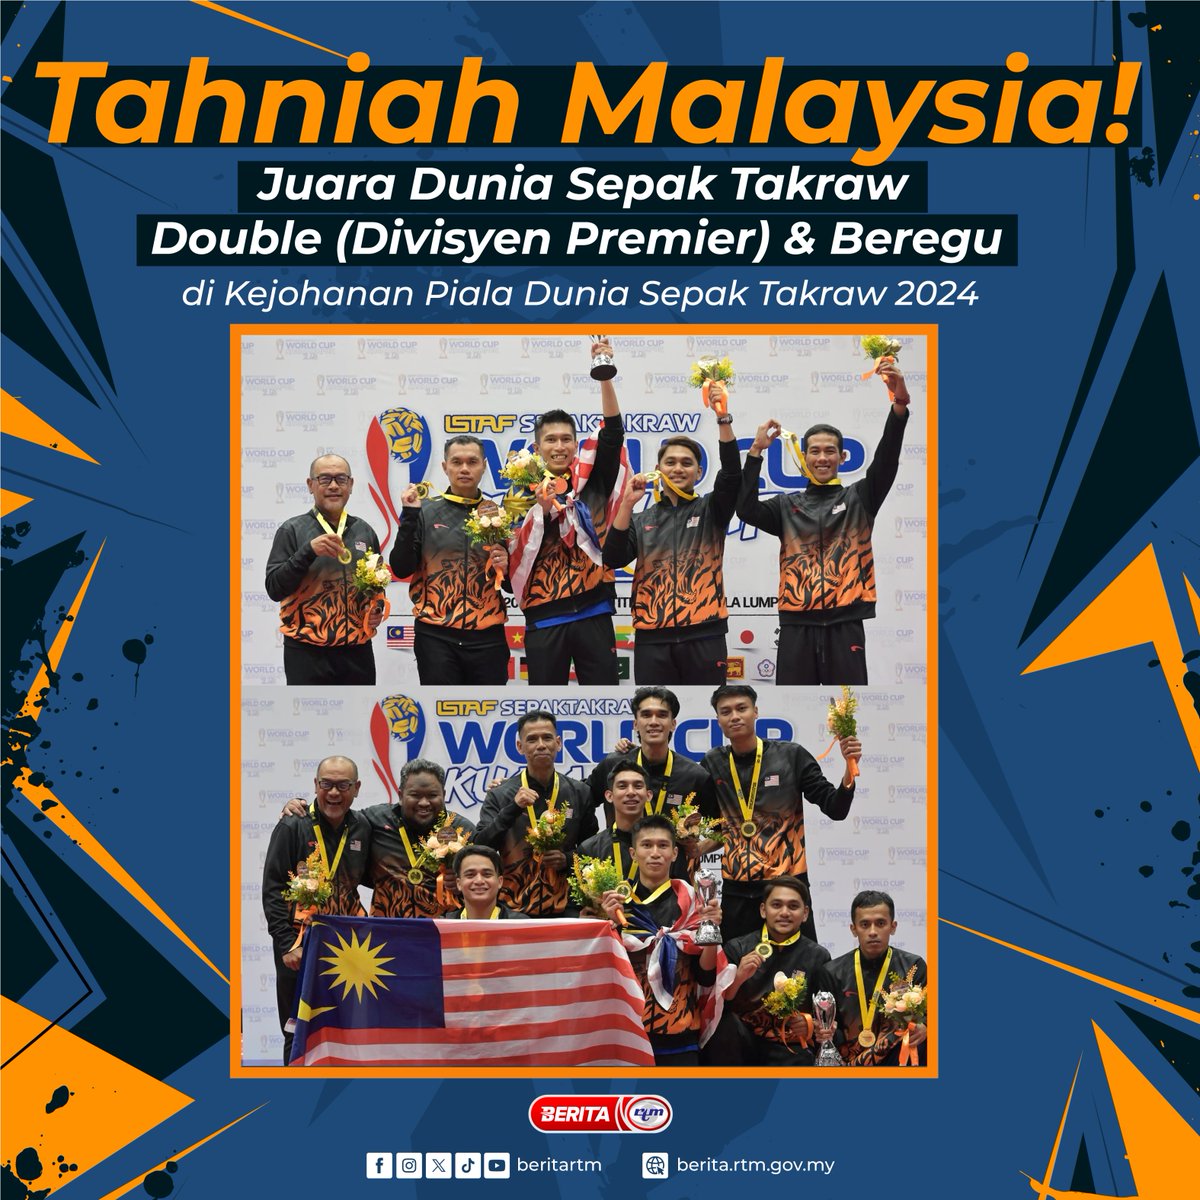 Tahniah Malaysia! Pasukan Malaysia menjadi juara dalam acara Double (Divisyen Premier) & Beregu selepas menewaskan pasukan Thailand dalam Kejohanan Piala Dunia Sepak Takraw 2024 di Stadium Titiwangsa, Kuala Lumpur malam tadi. 'Yang sahih di Berita RTM' #RTM #BeritaRTM